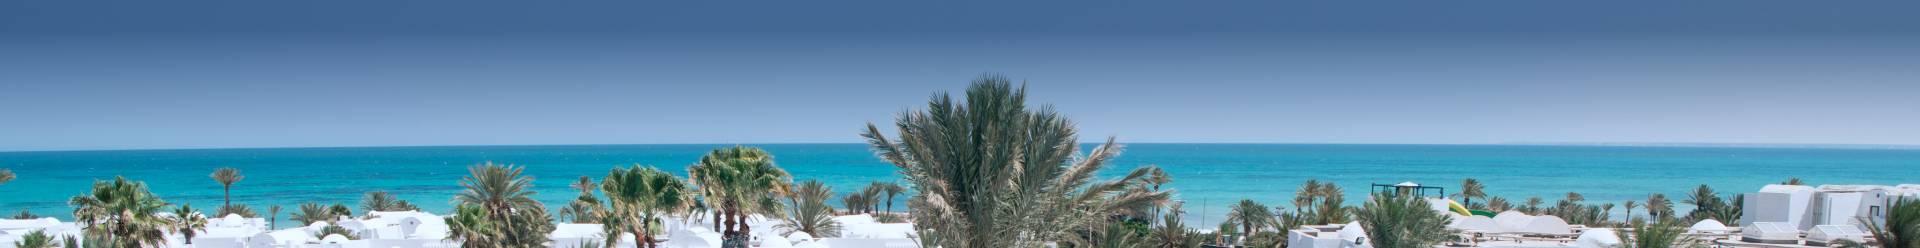 bandeau photo d'une plage avec palmiers